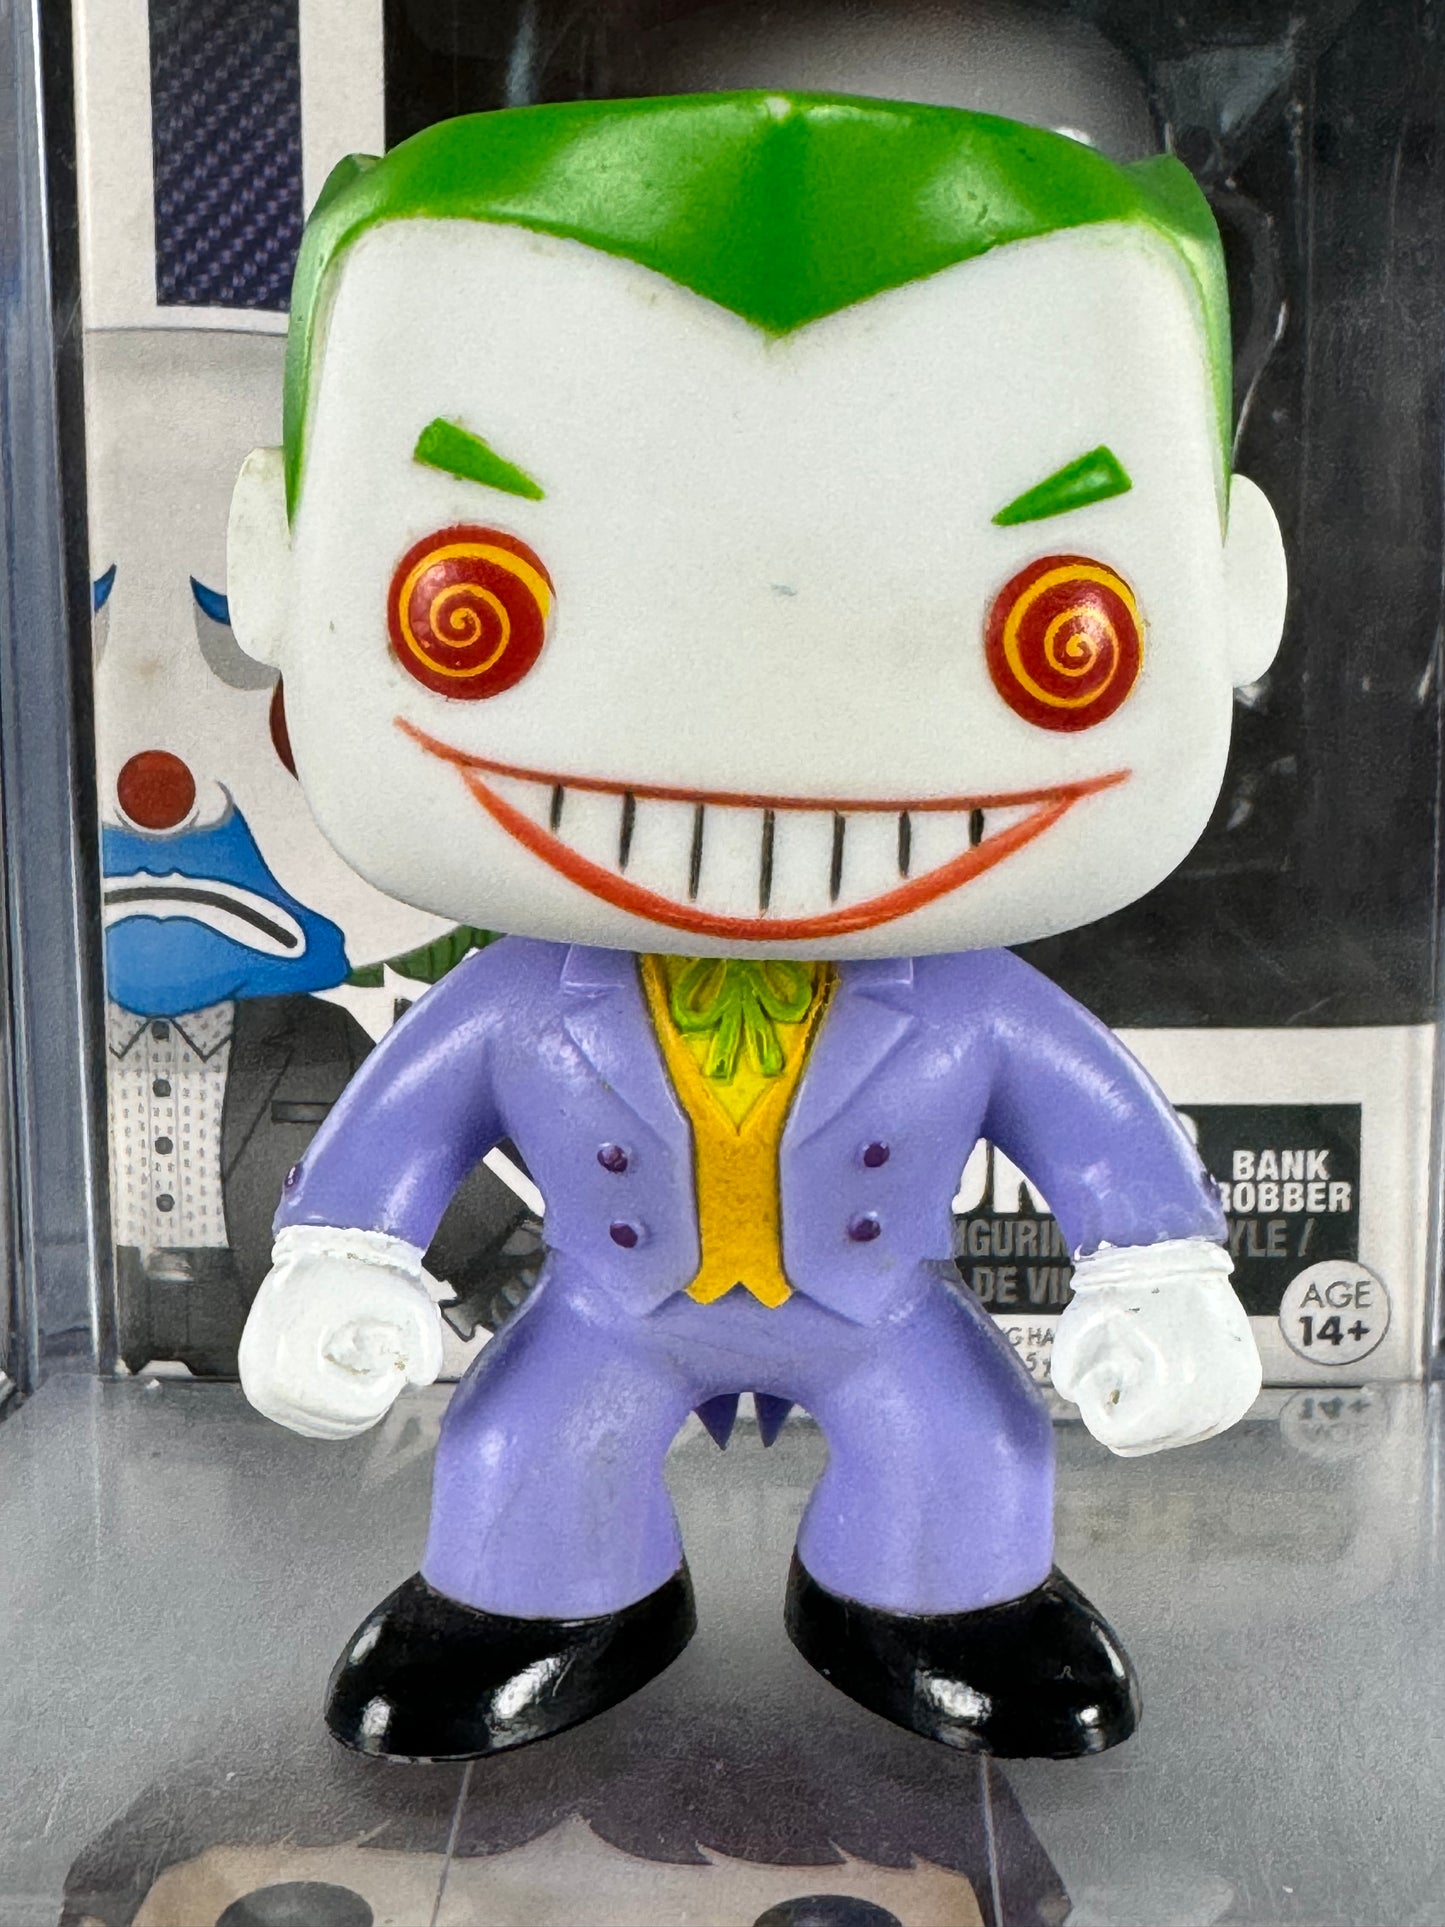 DC Universe - The Joker (06) Vaulted OOB